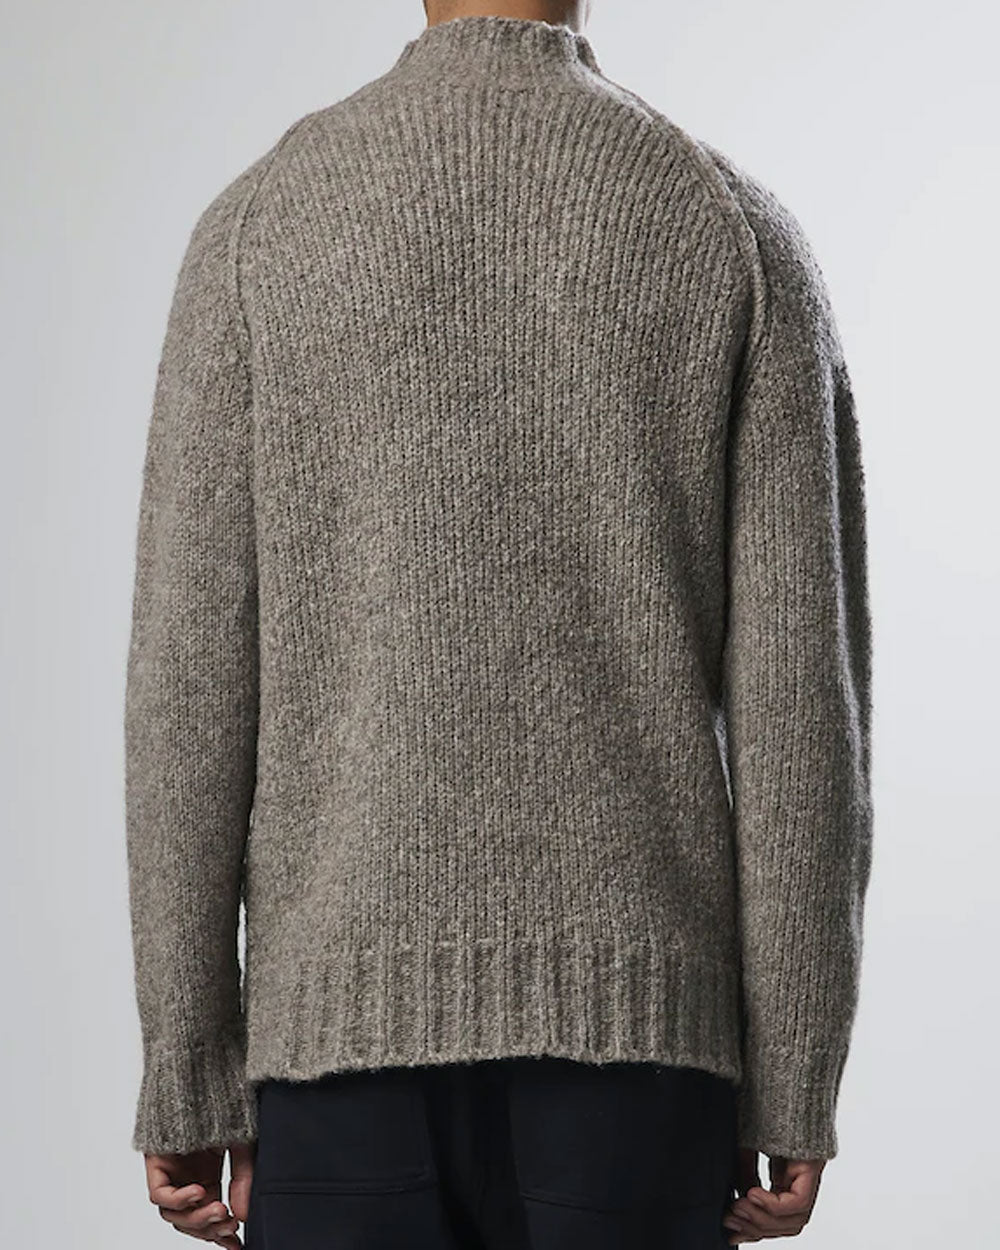 William Grey Sweater